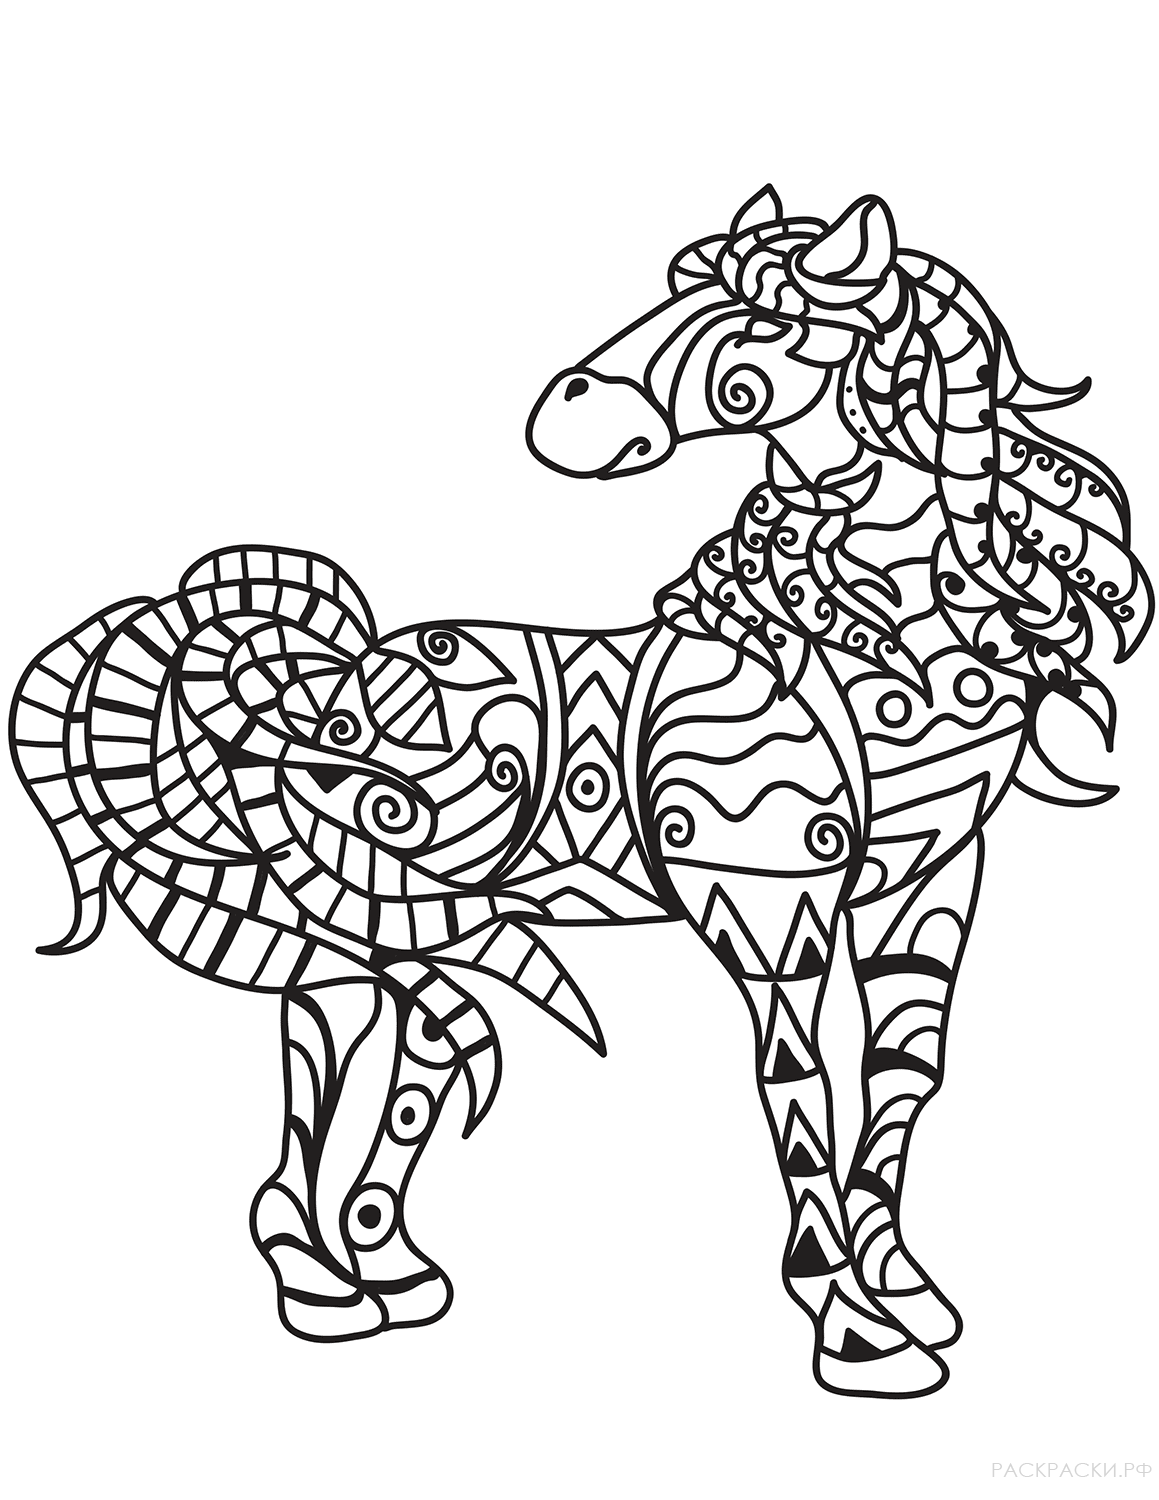 Раскраска Лошадь в технике дзентангл 4